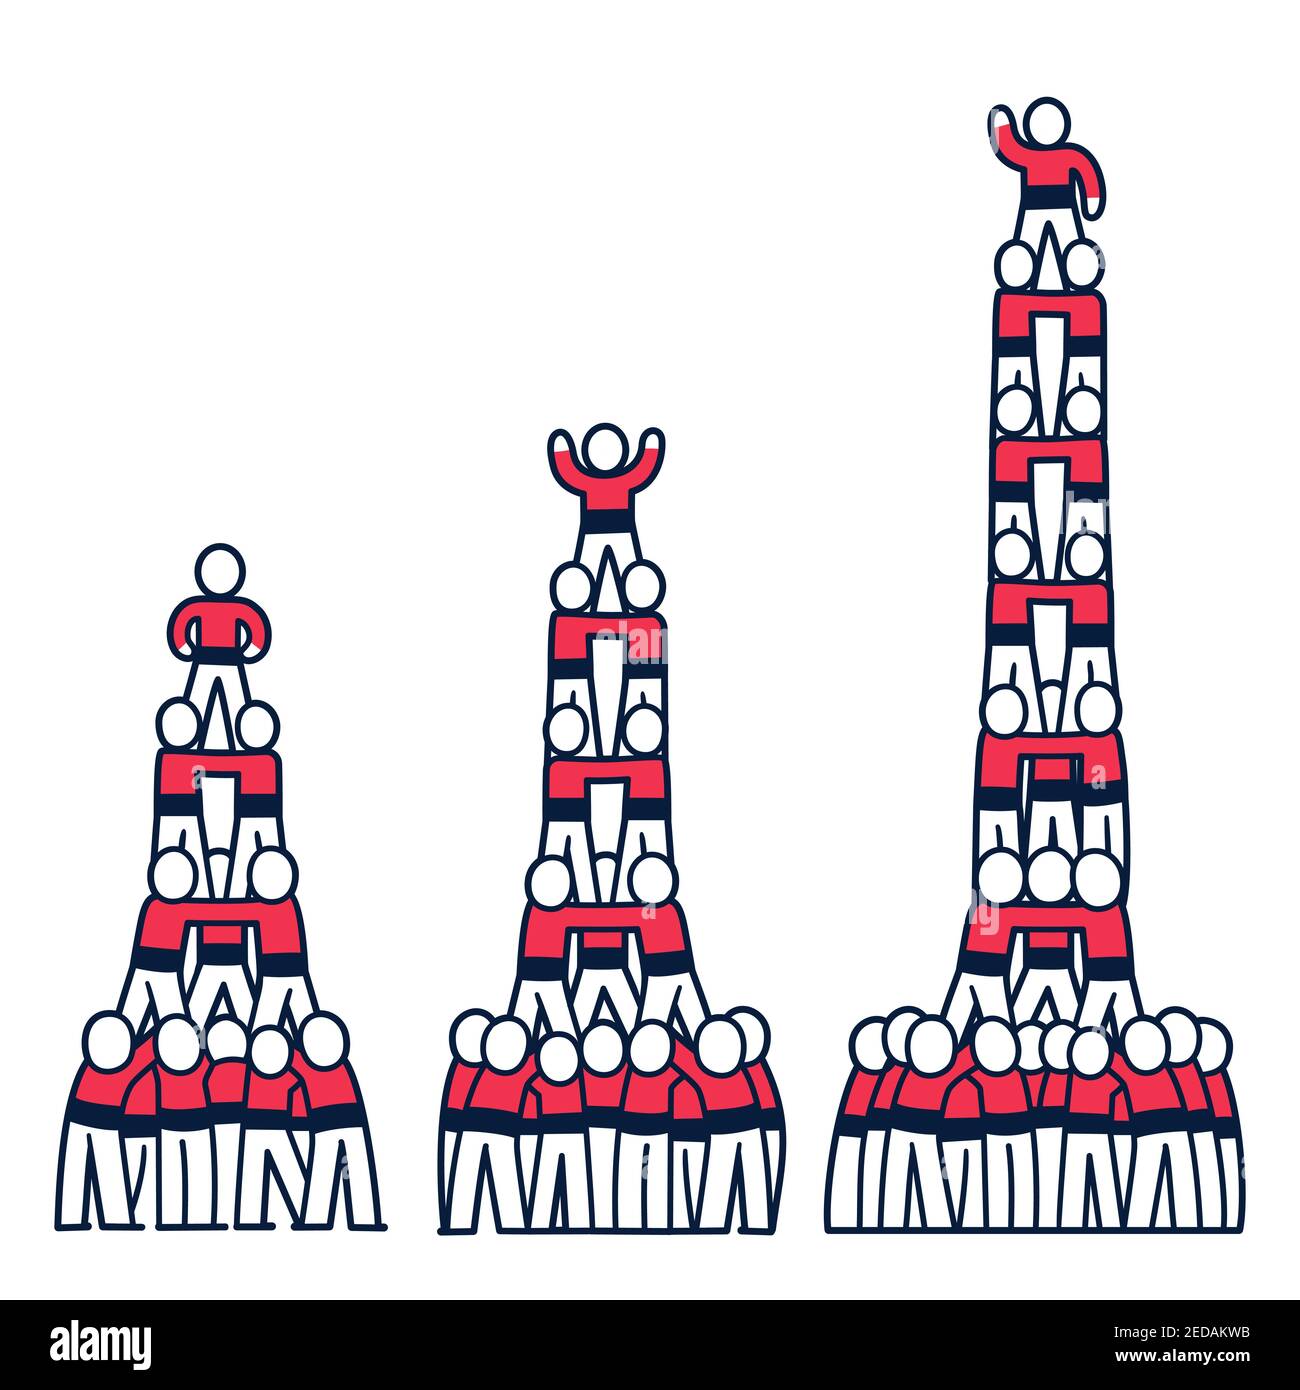 Castell Zeichnung, menschlicher Turm traditionell in Katalonien. Einfache Cartoon Menschen Gebäude Pyramide, 3 Höhen. Isolierte Vektor-Clip Art-Illustration. Stock Vektor